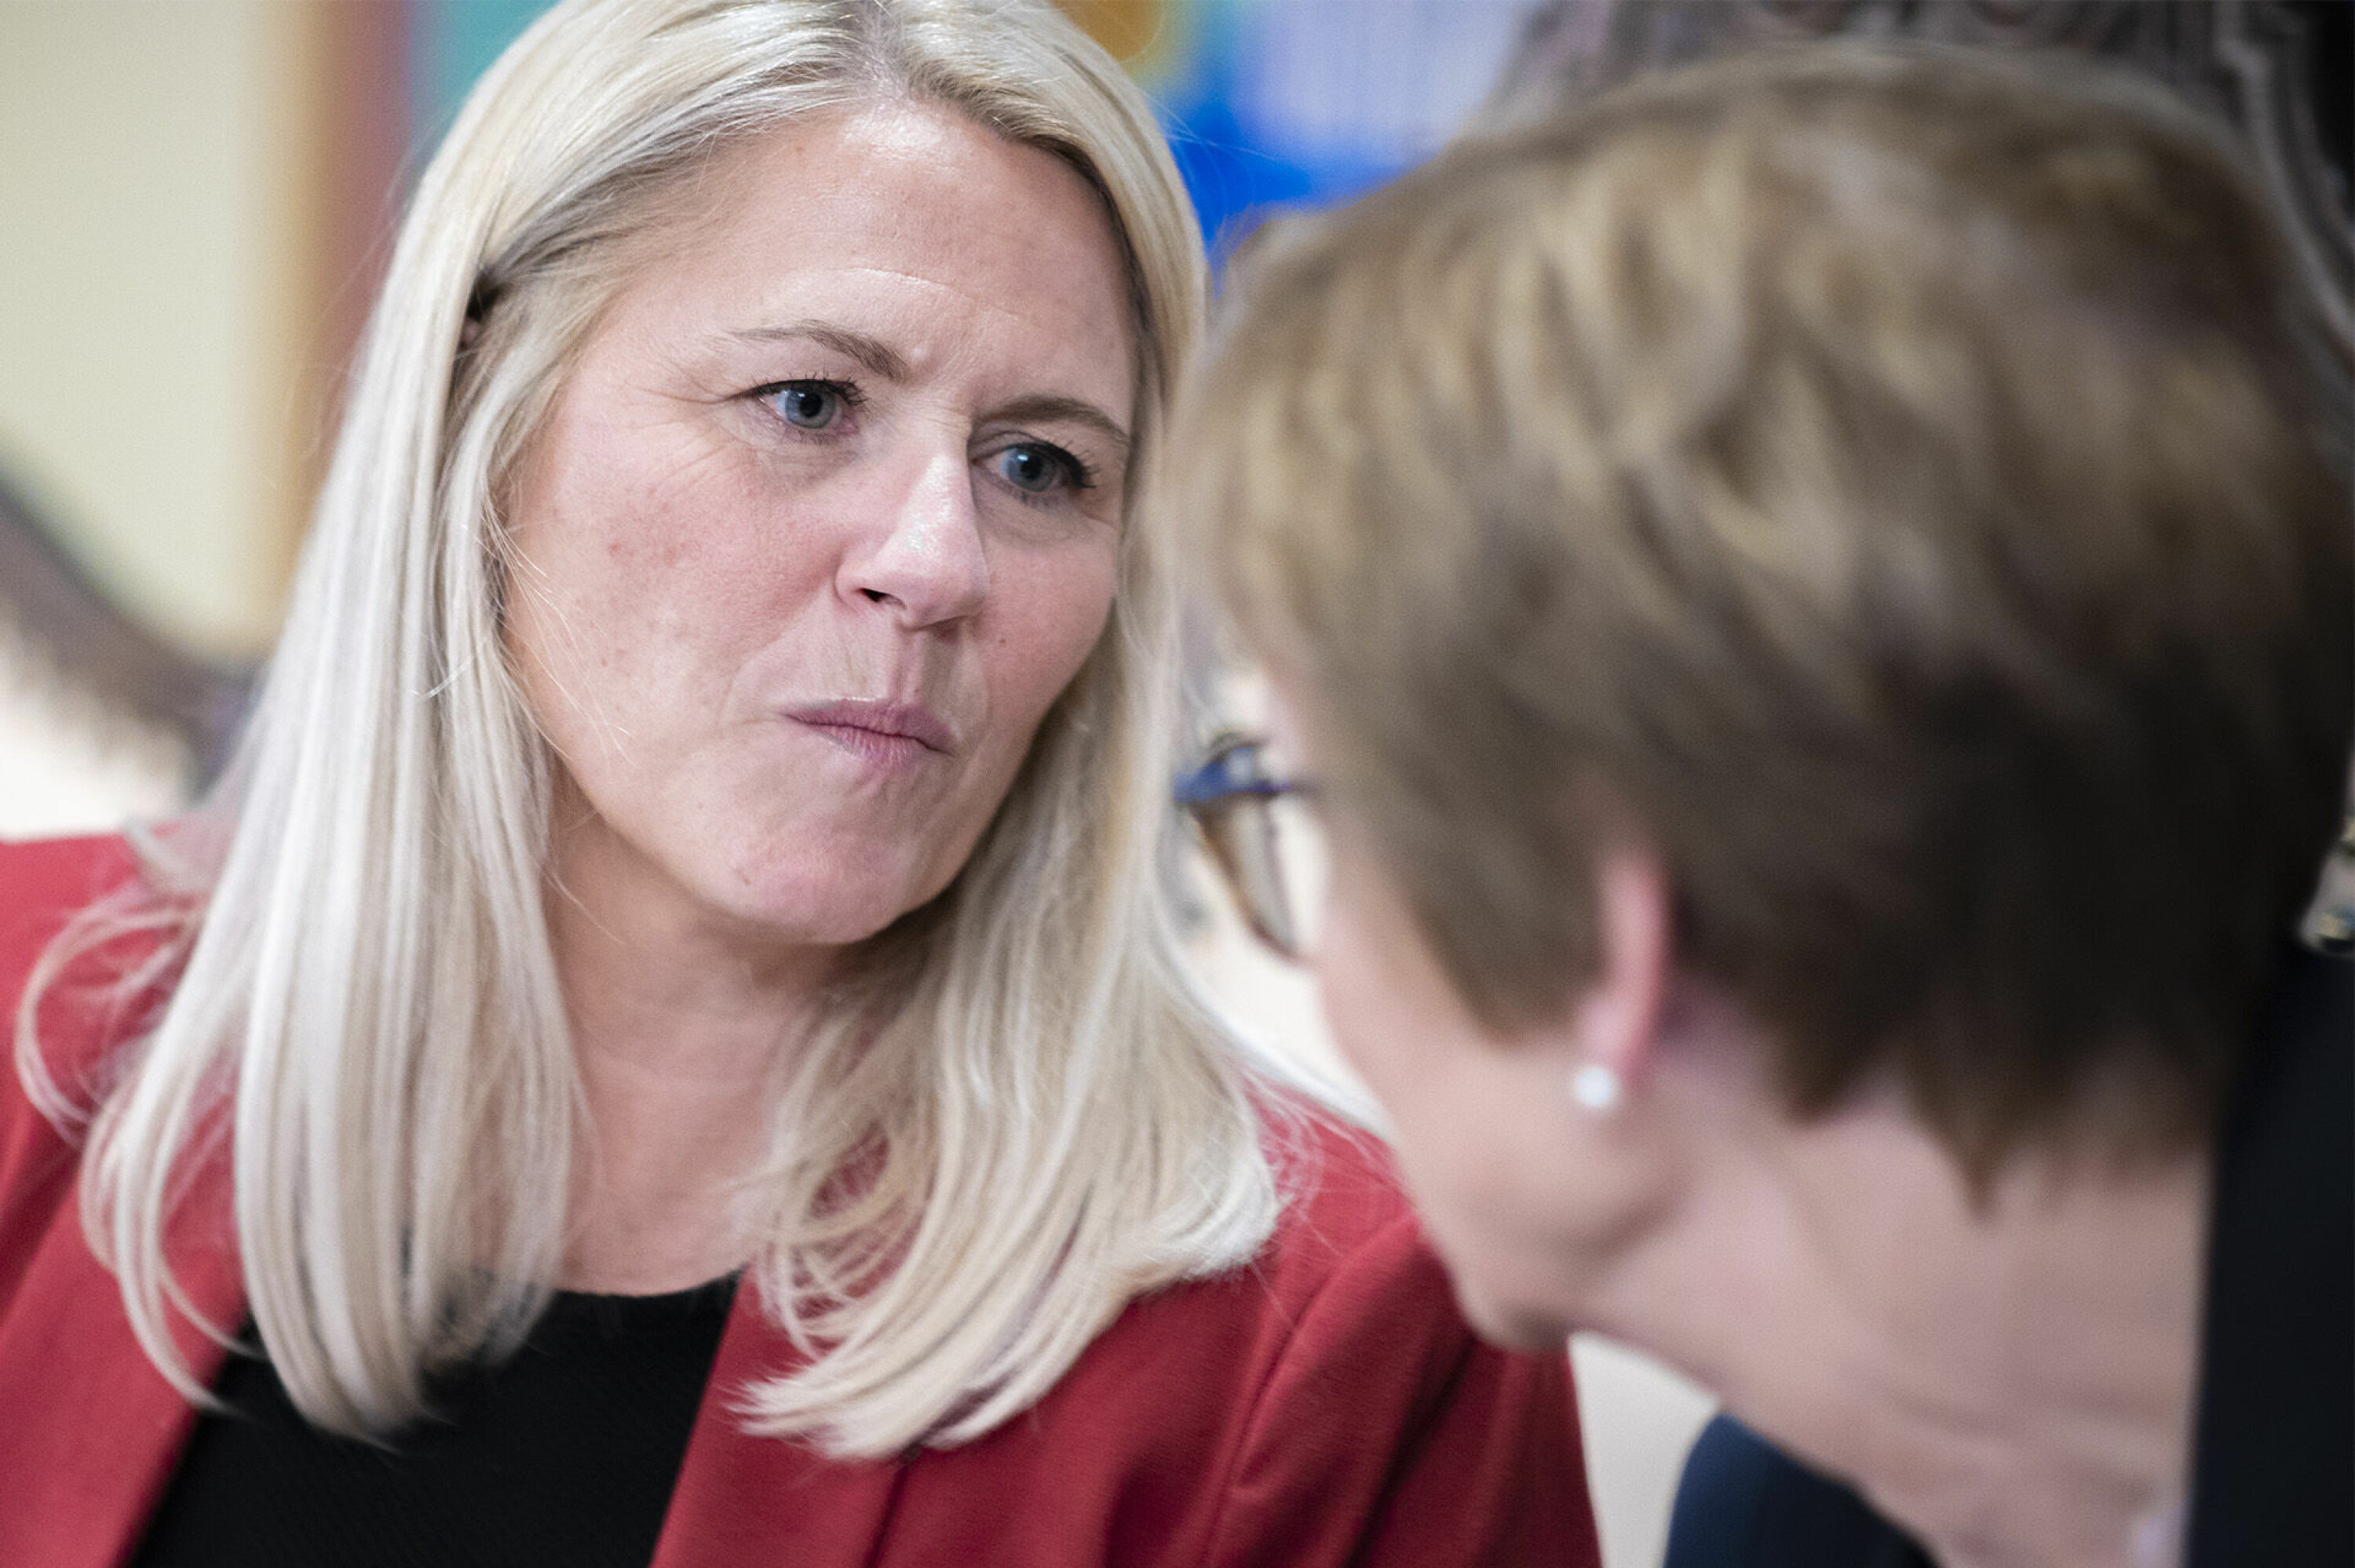 SENTRAL: Ordfører Monica Myrvold Berg har vært bindeleddet mellom statsforvalter, regjering, smittevernrådet og formannskapets medlemmer i Drammen, som ble kalt inn av ordføreren for å vedta lokale coronaforskrifter.